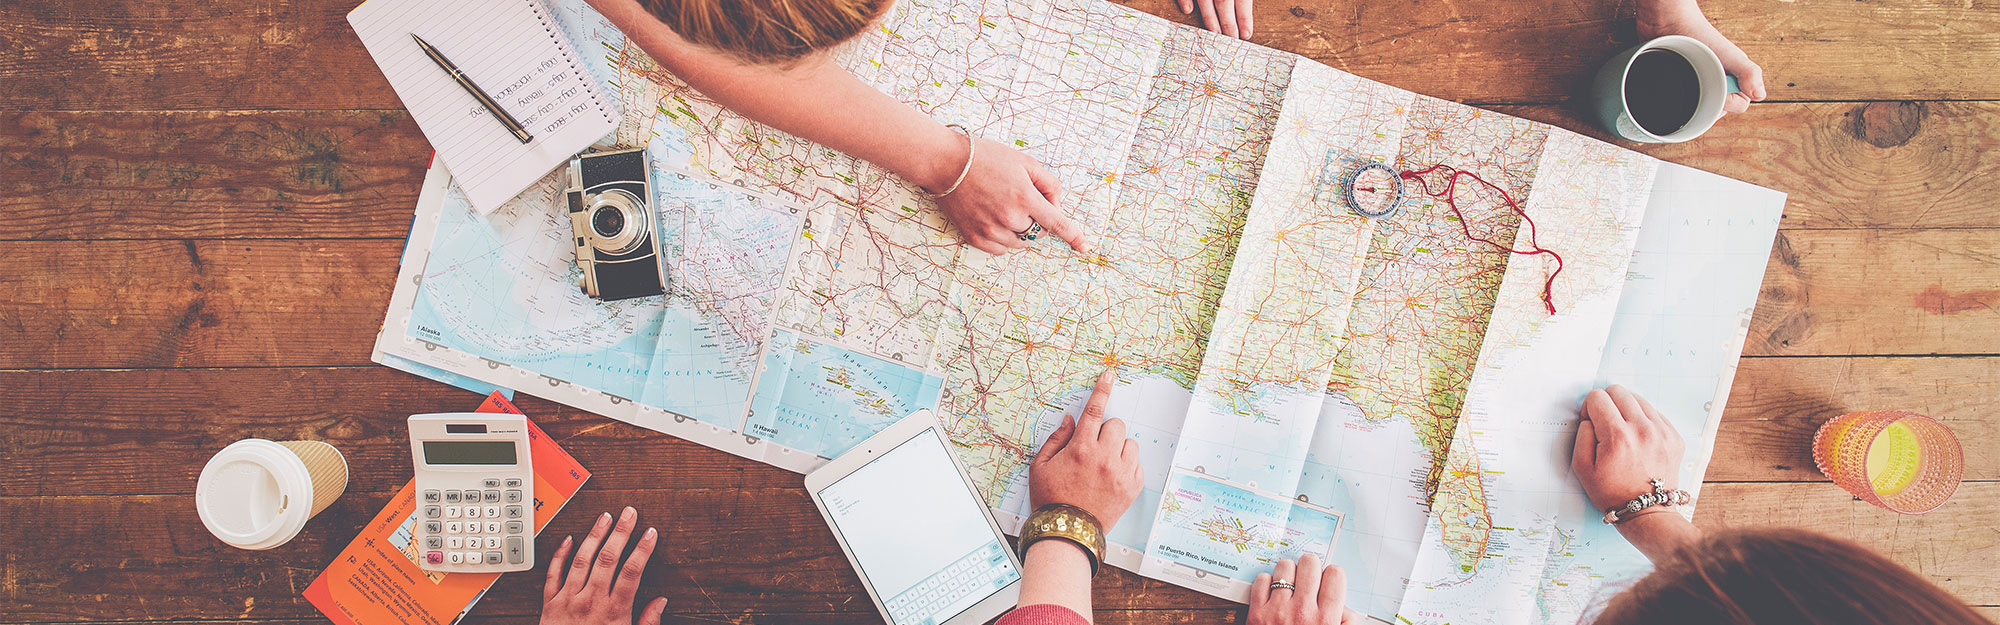 Personer planerar en resa med en karta på ett träbord